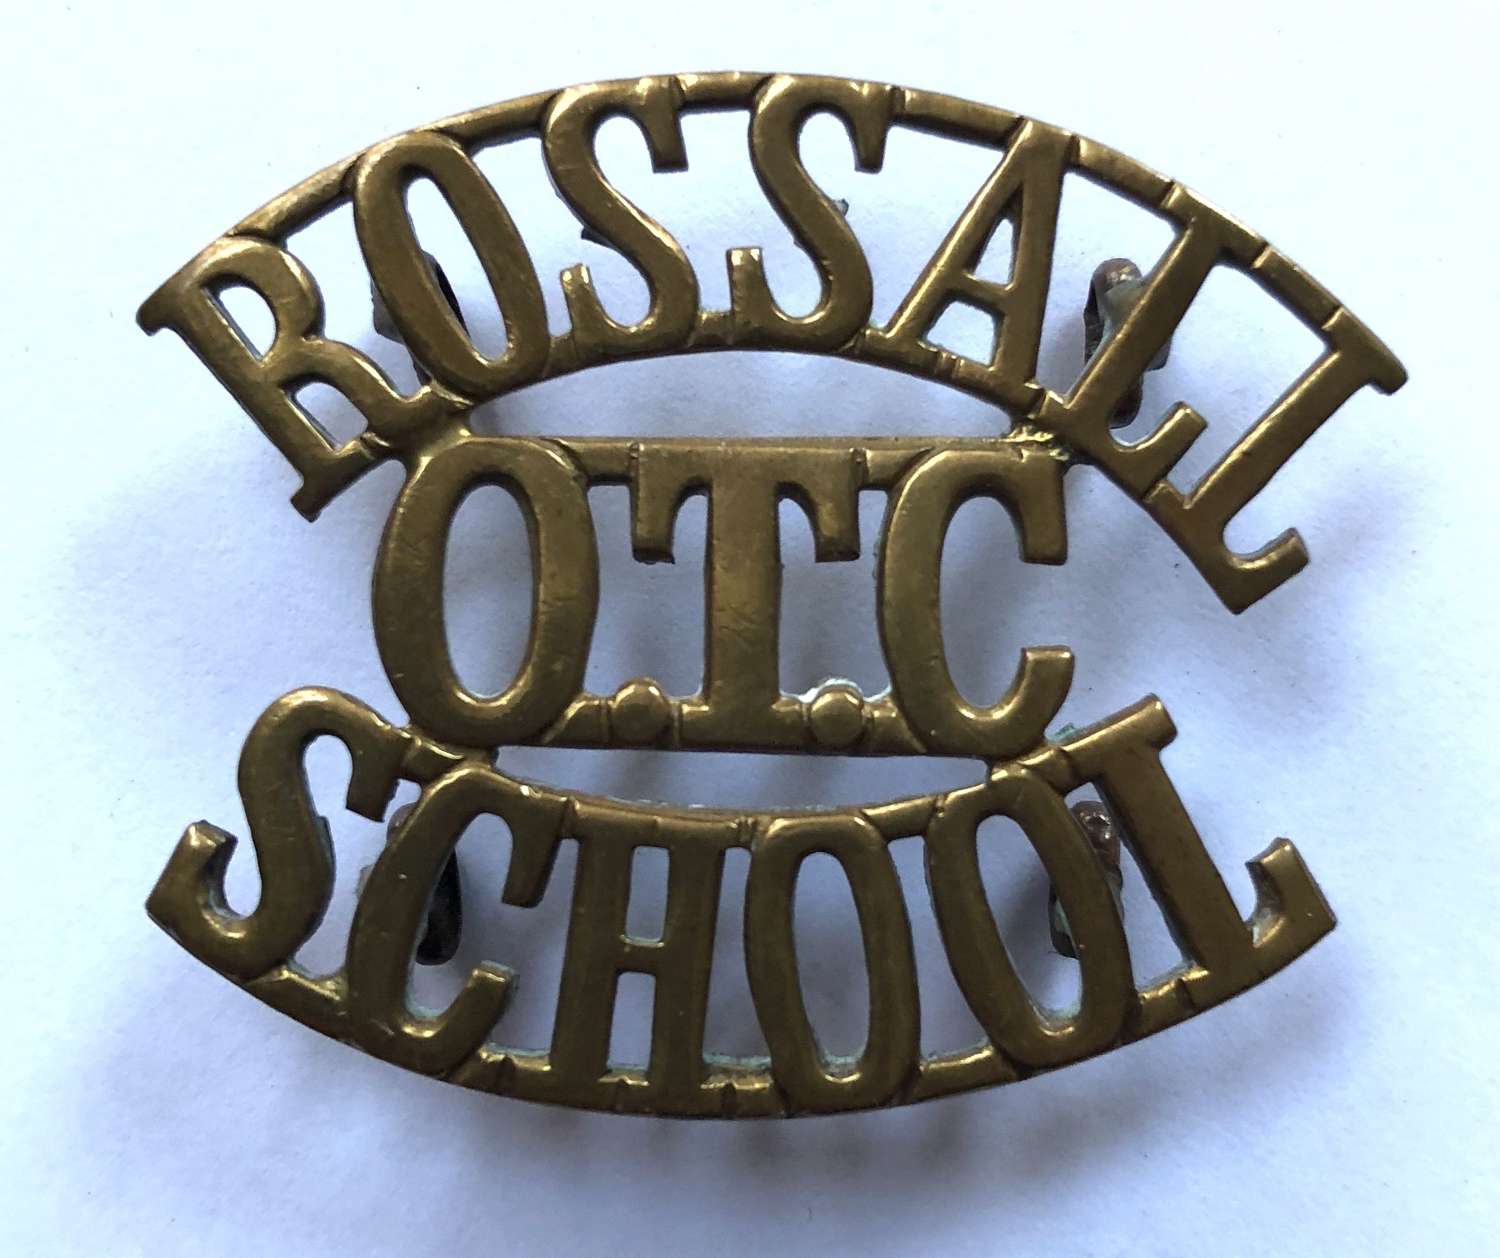 ROSSALL / OTC / SCHOOL shoulder title c1908-40